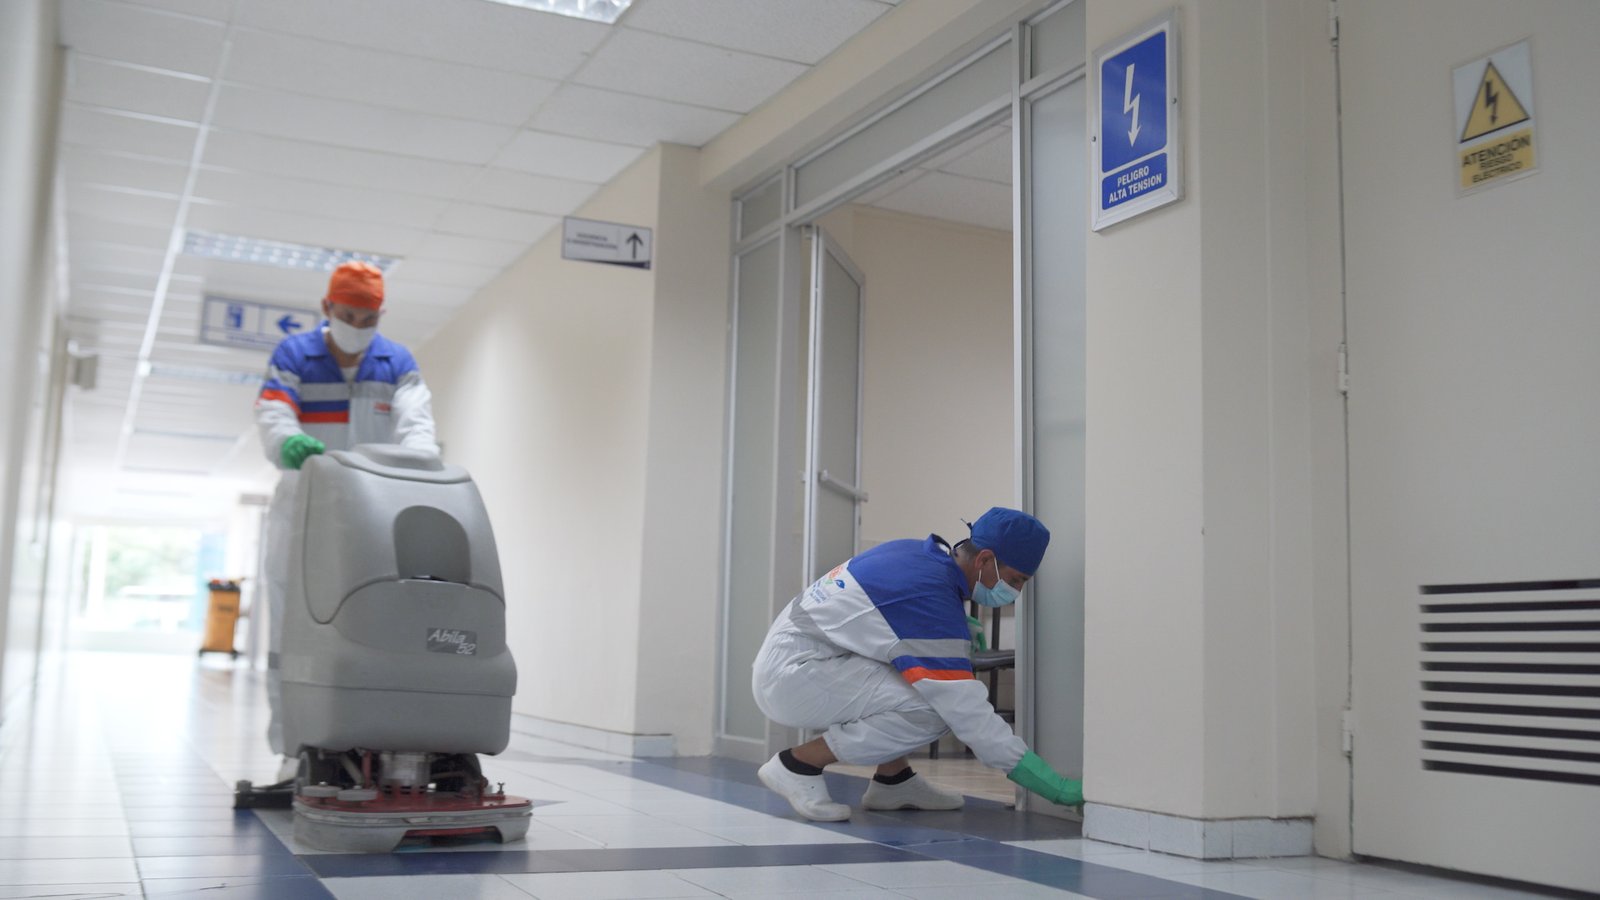 Las 5 mejores empresas de limpieza en Ecuador: Calidad, precio y flexibilidad.0 (0)